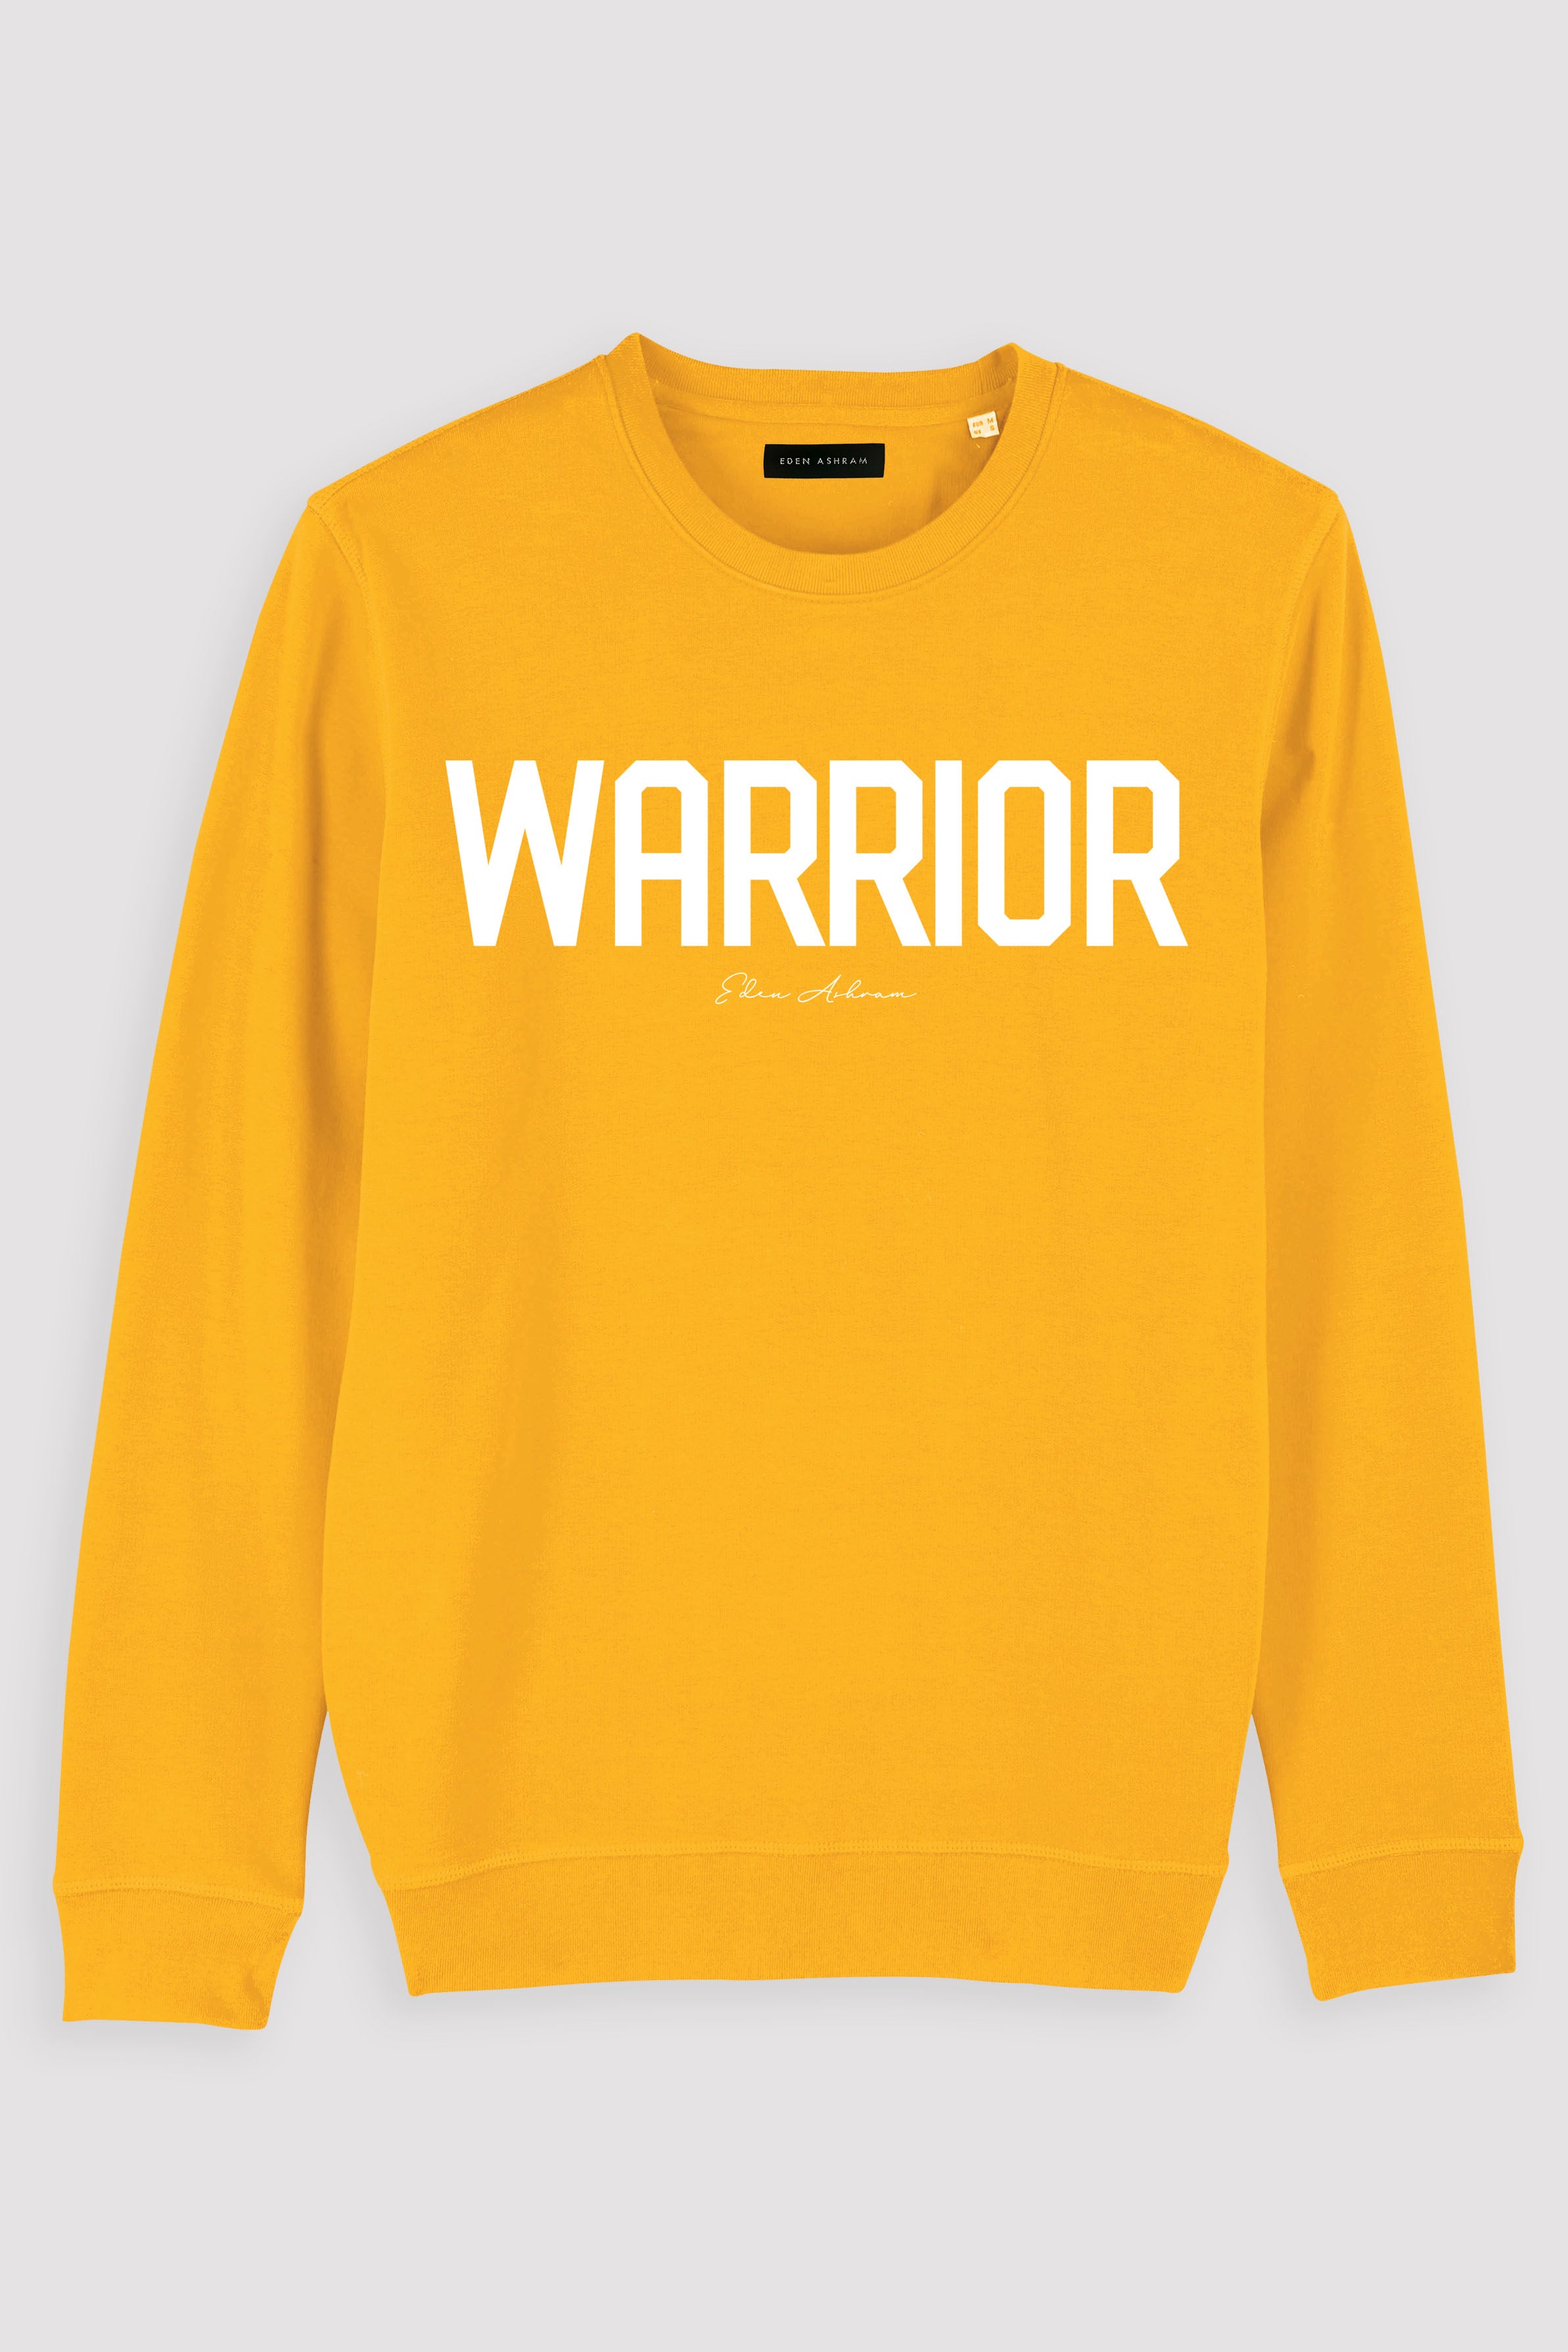 EDEN ASHRAM Warrior Premium Crew Neck Sweatshirt Spectra Yellow